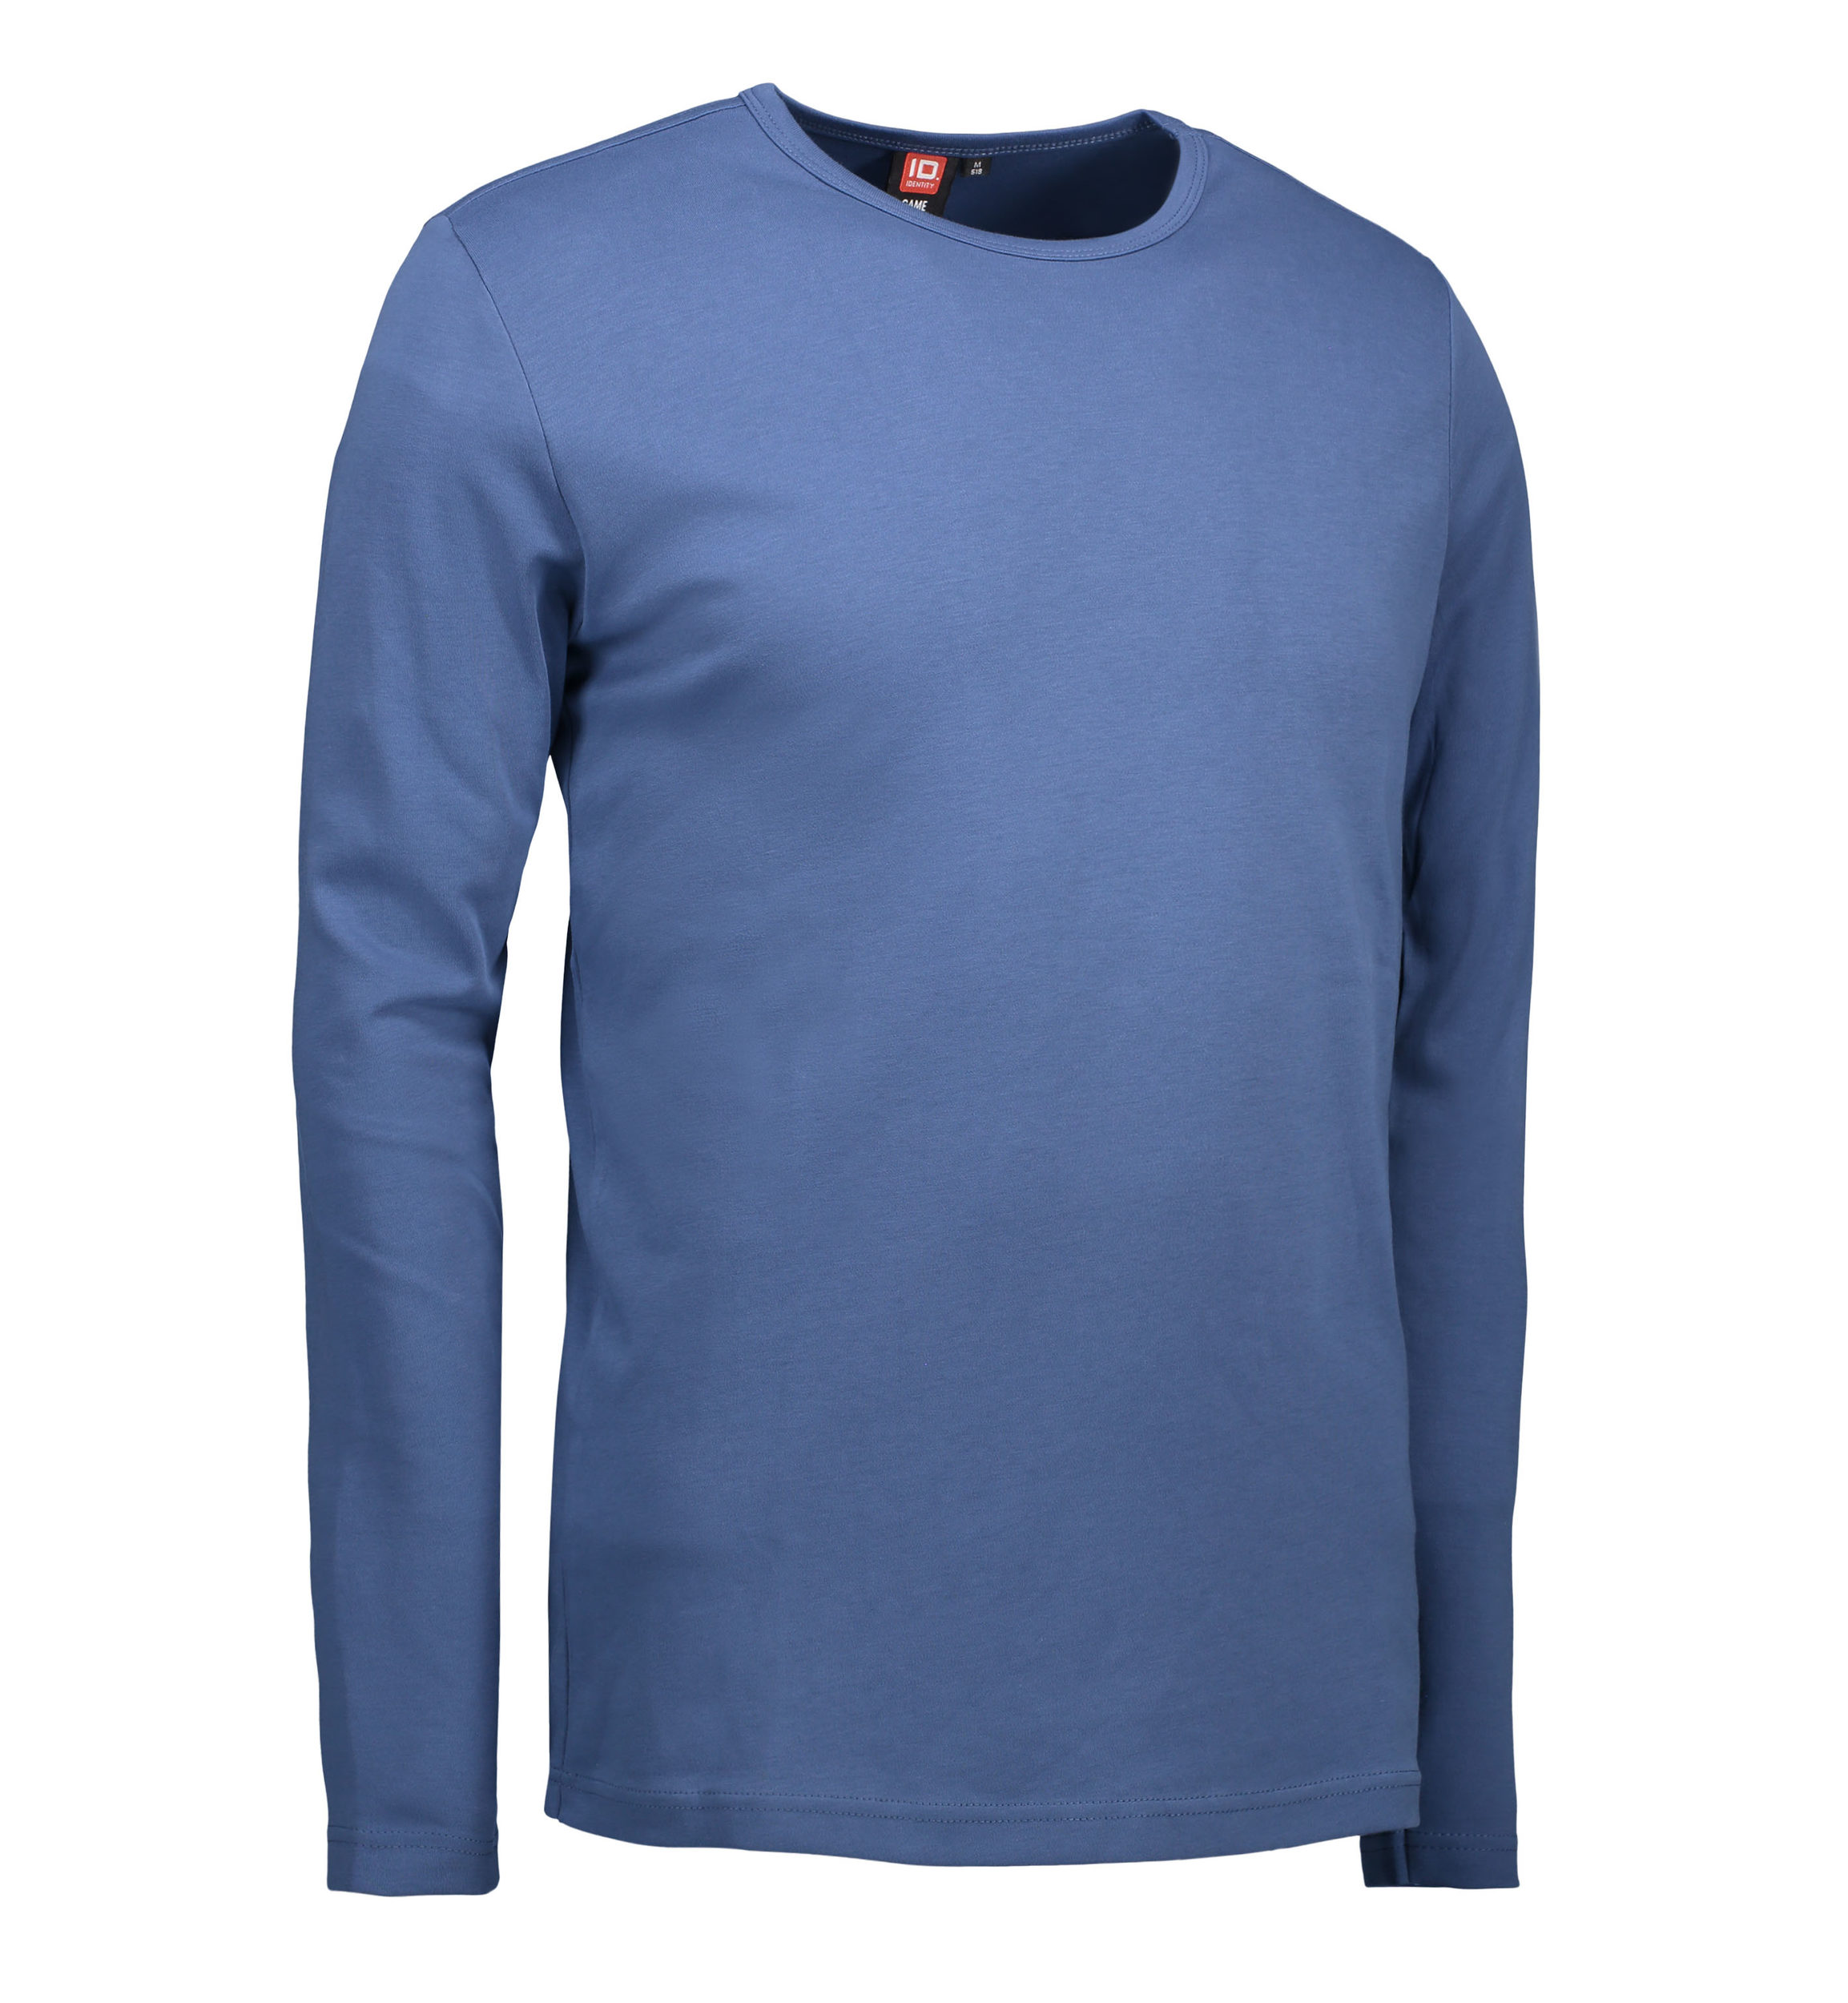 Billede af Indigo farvet langærmet t-shirt til mænd - XL hos Sygeplejebutikken.dk